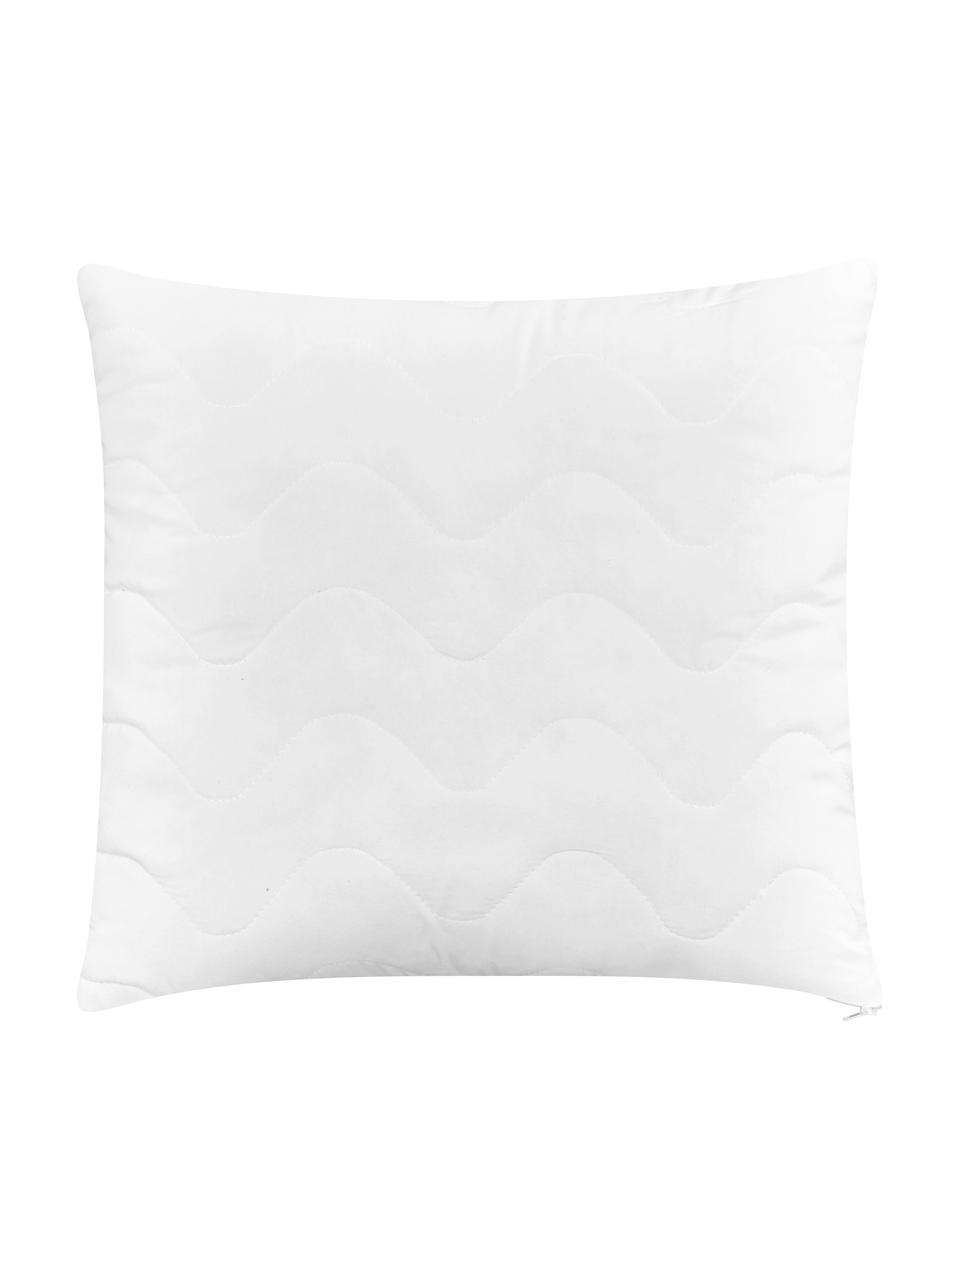 Wkład do poduszki Premium Sia, 45x45, Biały, S 45 x D 45 cm